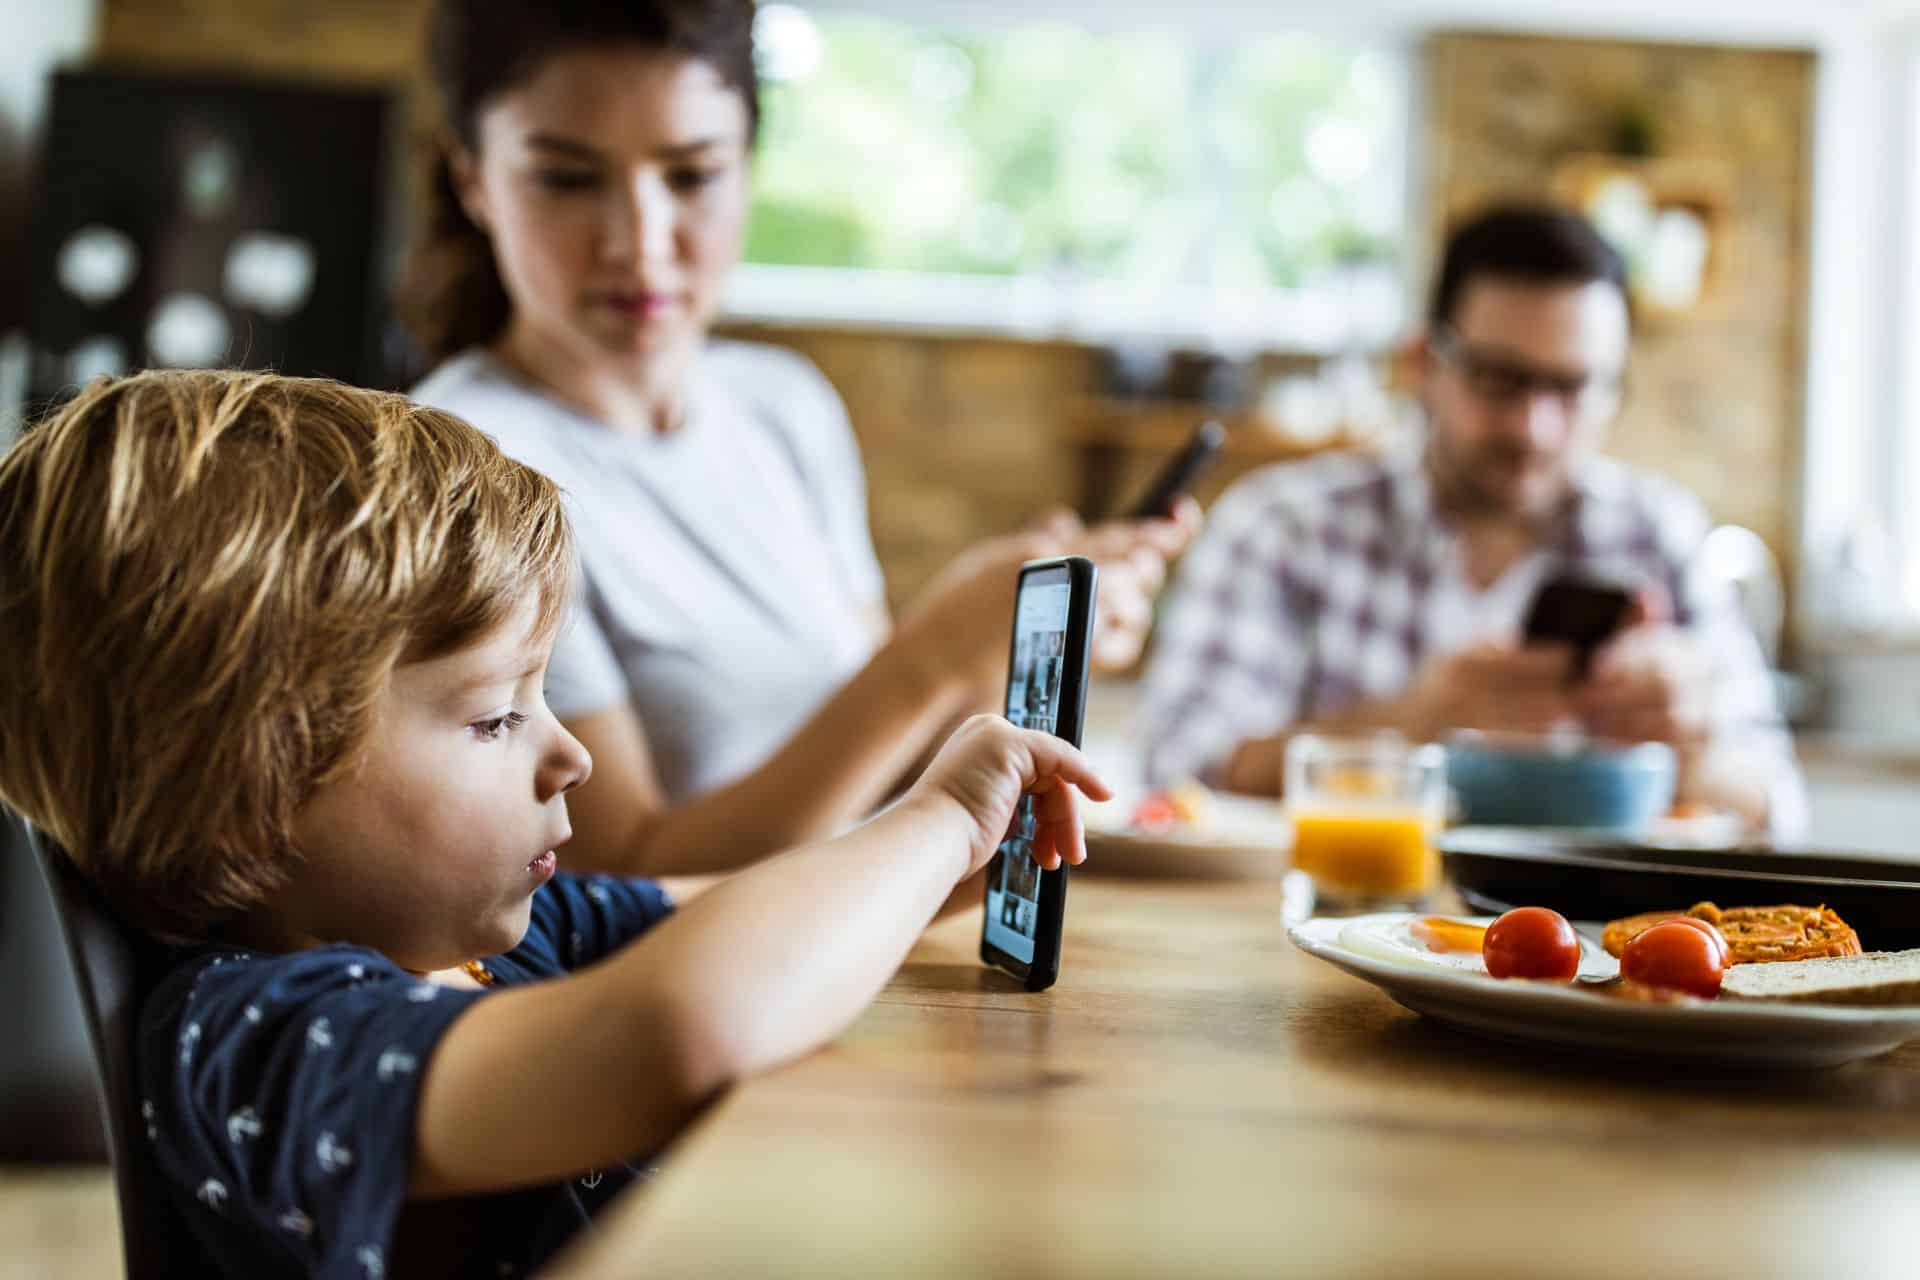 Schermtijd tijdens het eten: mogen jonge kinderen aan tafel op hun scherm spelen?